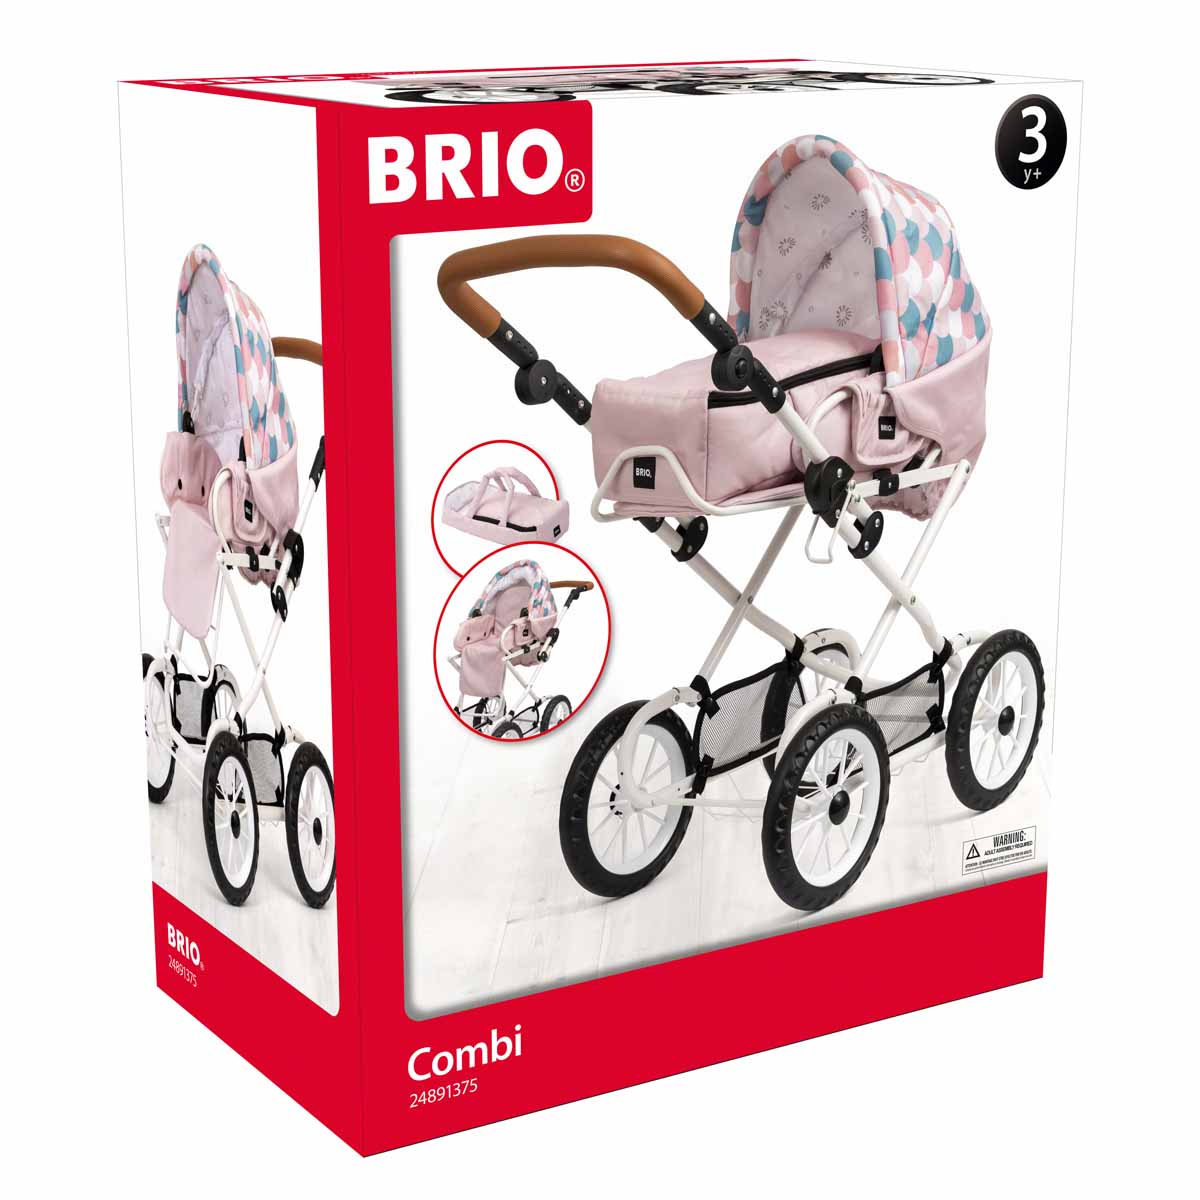 Köp BRIO Combi Droplets Pink på lekia.se